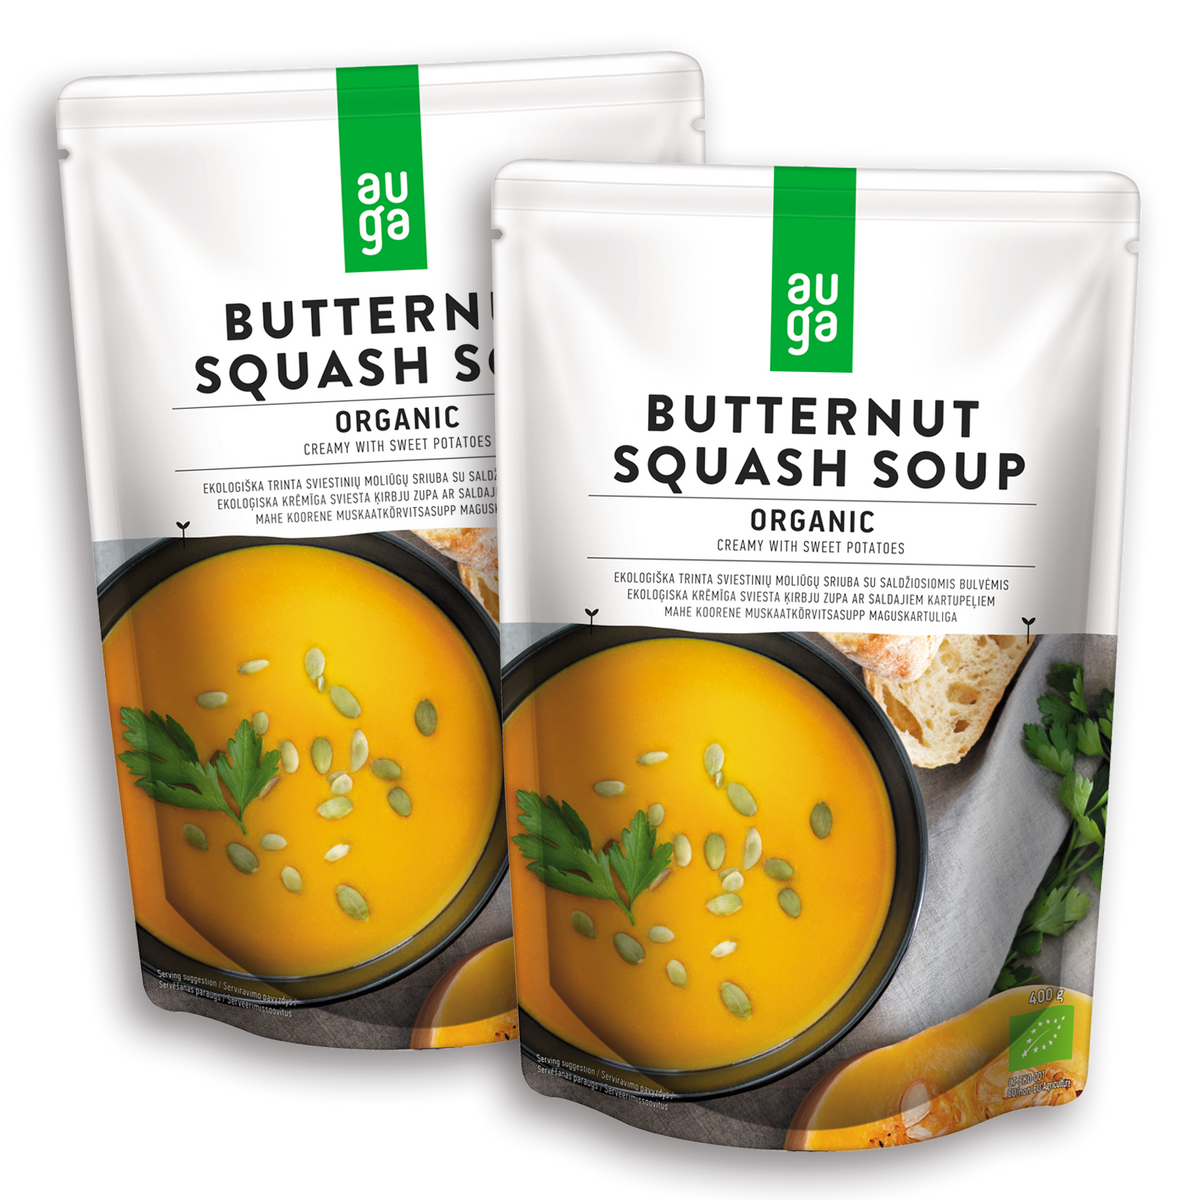 Certified Organic Butternut Squash Soup (800g) - Horizon Farms